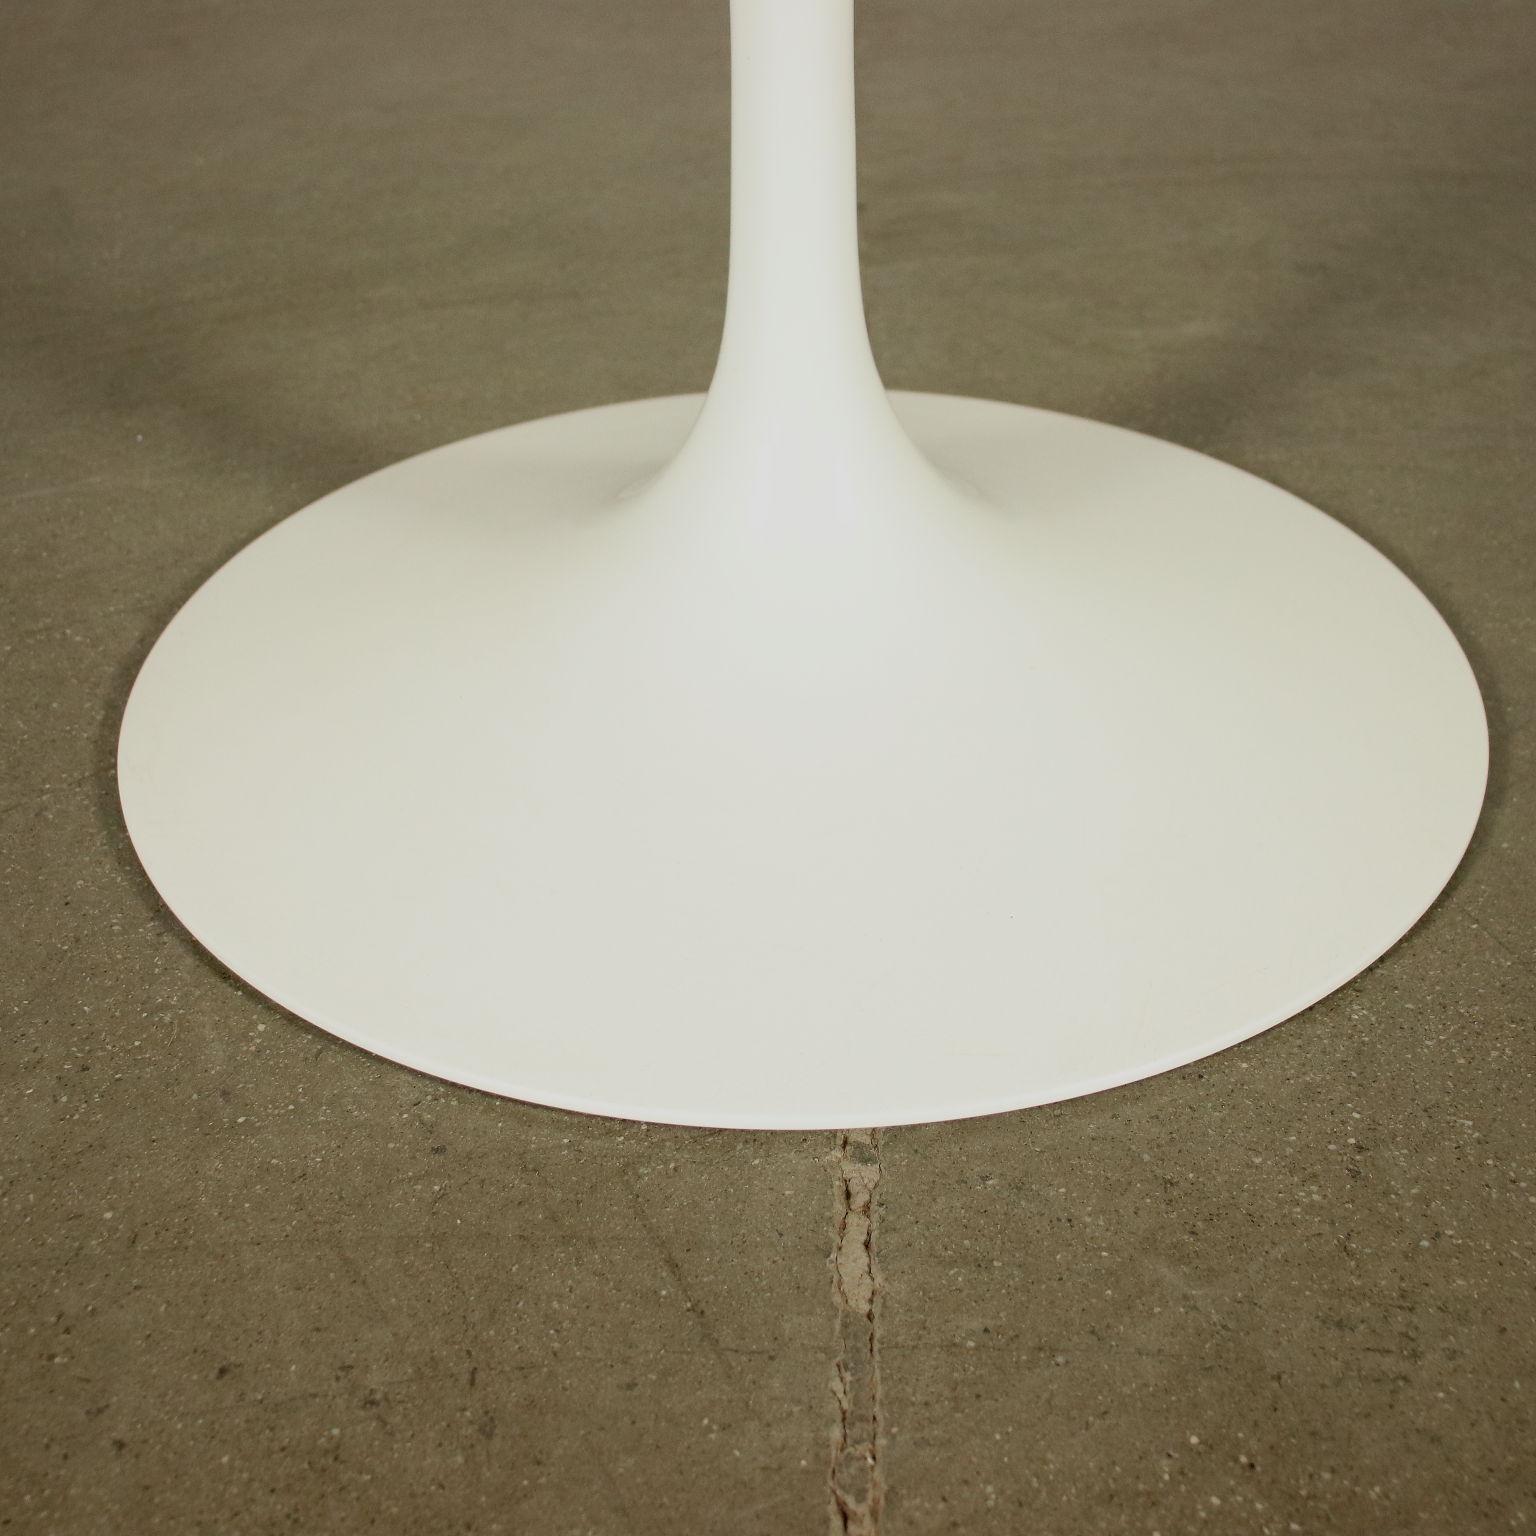 Late 20th Century Eero Saarinen Table Lacquered Aluminium Marble 1980s 1990s